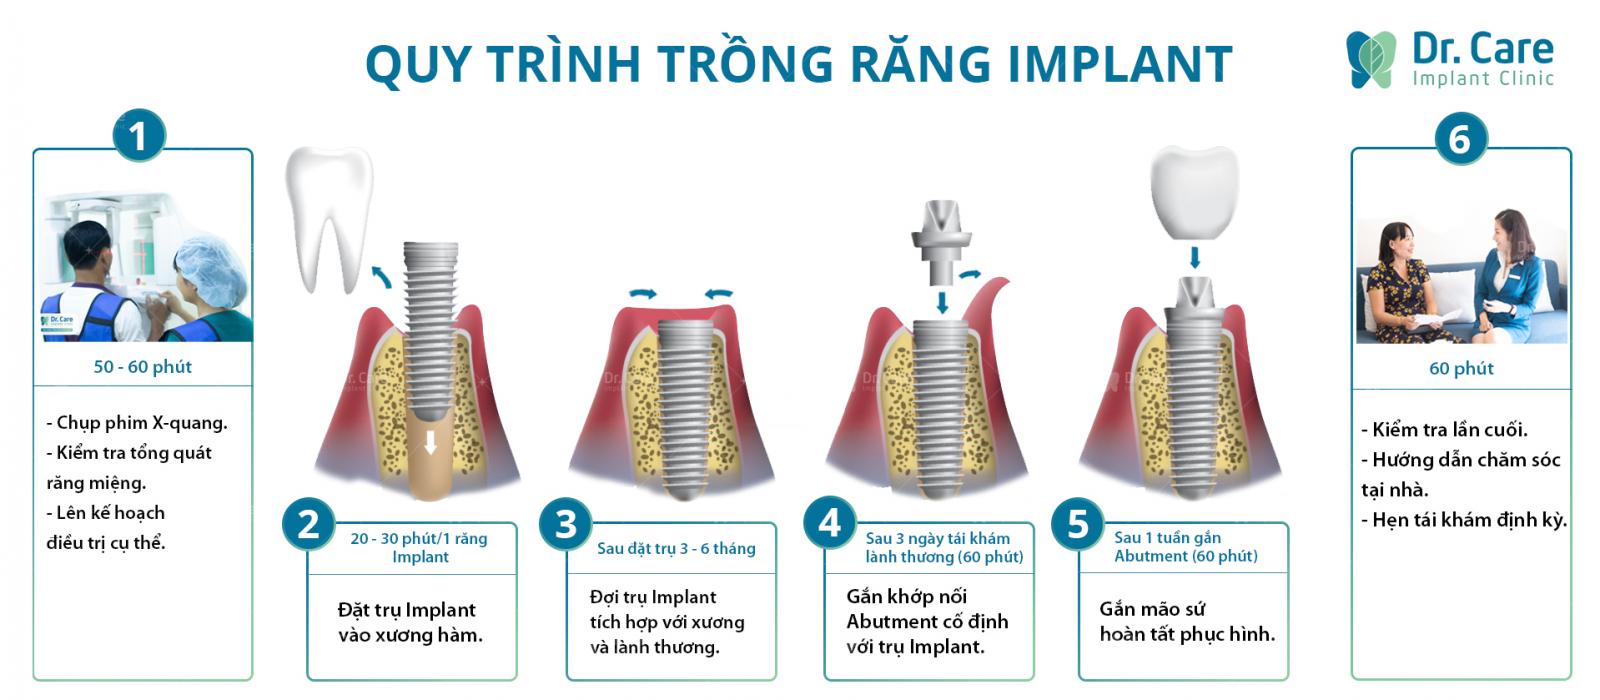 Quy trình trồng răng Implant chuẩn Y khoa tại Dr. Care Bình Thạnh